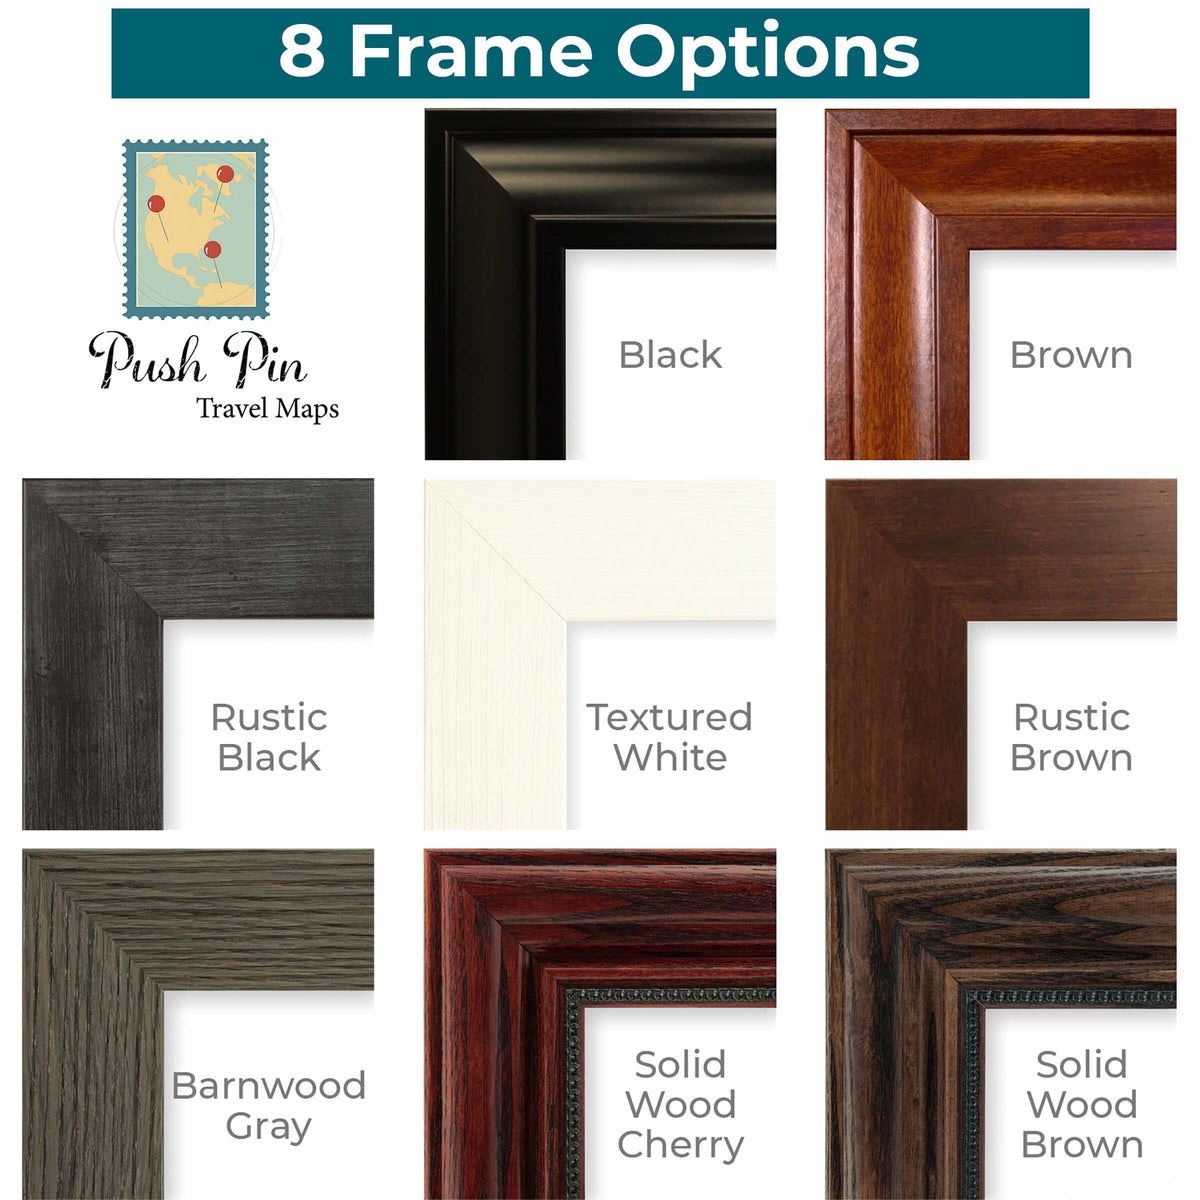 Standard Frame Options